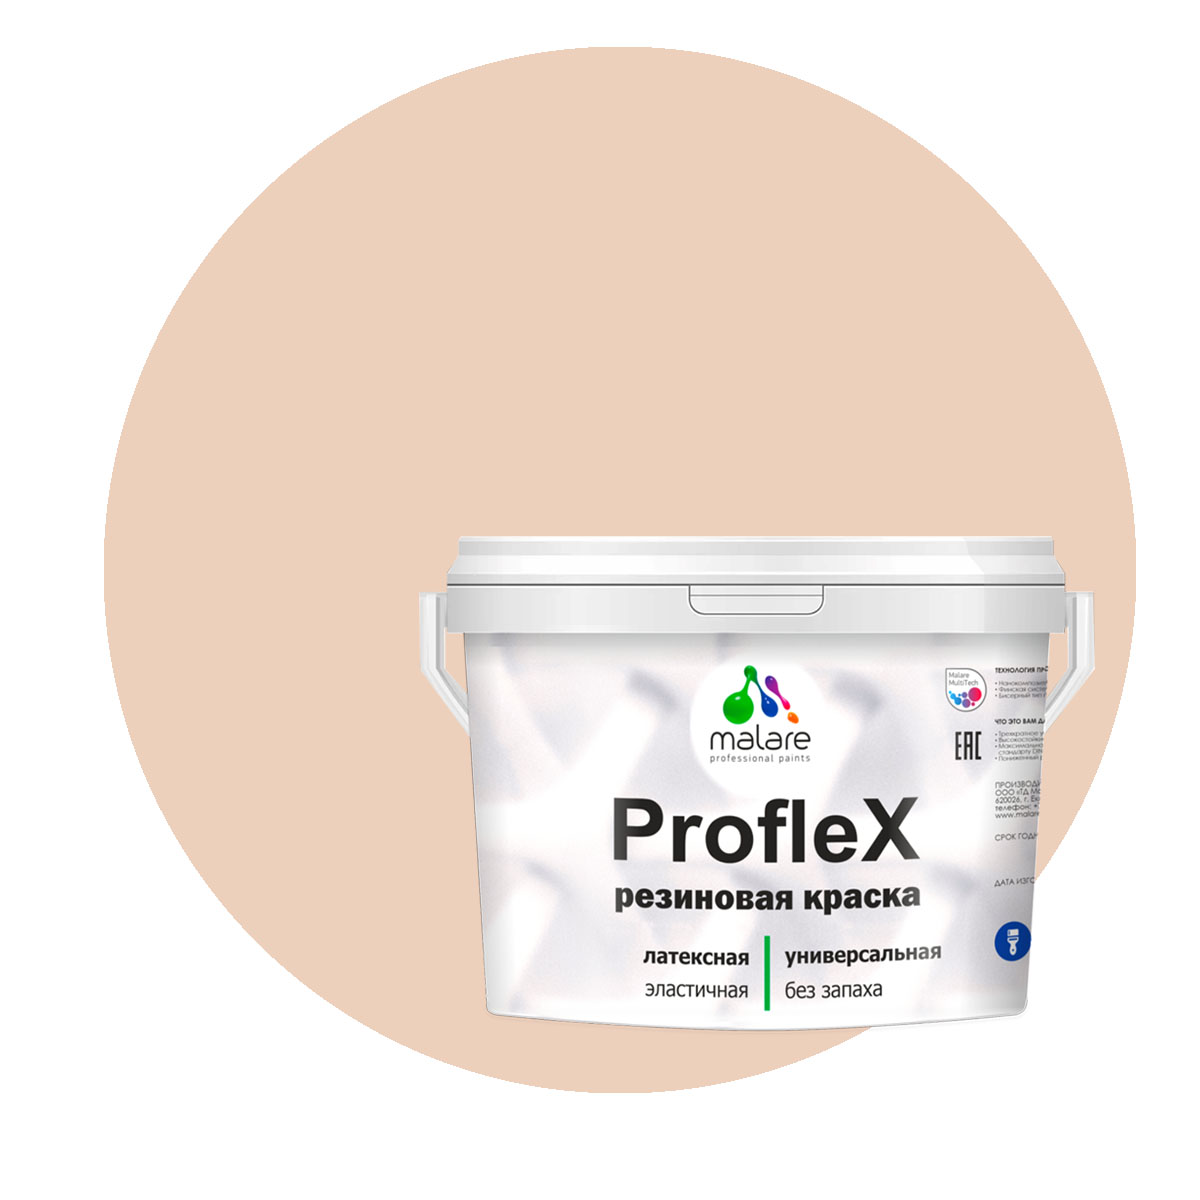 Краска Malare ProfleX для фасадов, интерьера, мебели, эффект дежавю, 10 кг.